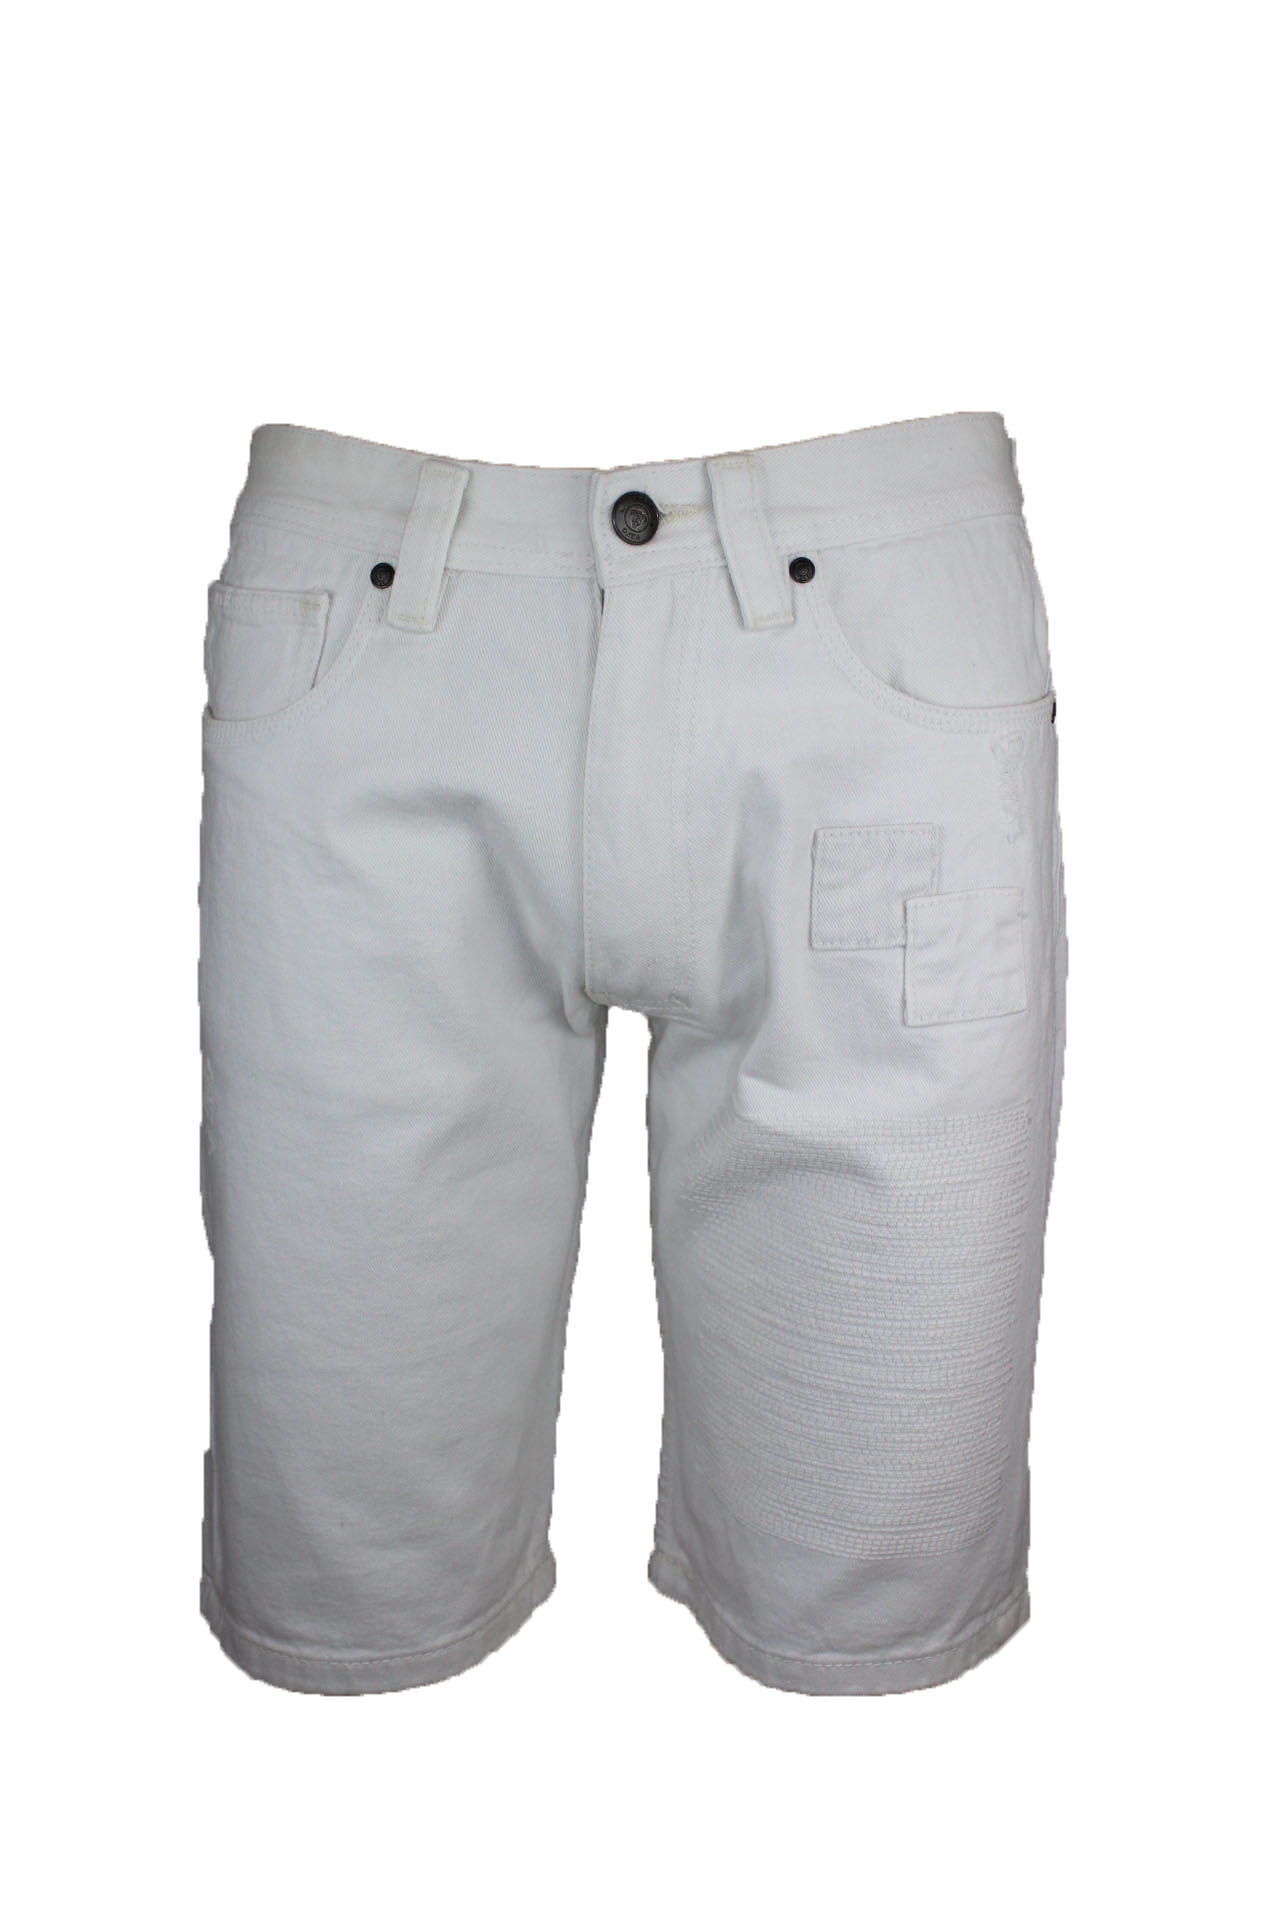 Veno Clothing Men's Skinny Fit Denim Shorts White - Walmart.com